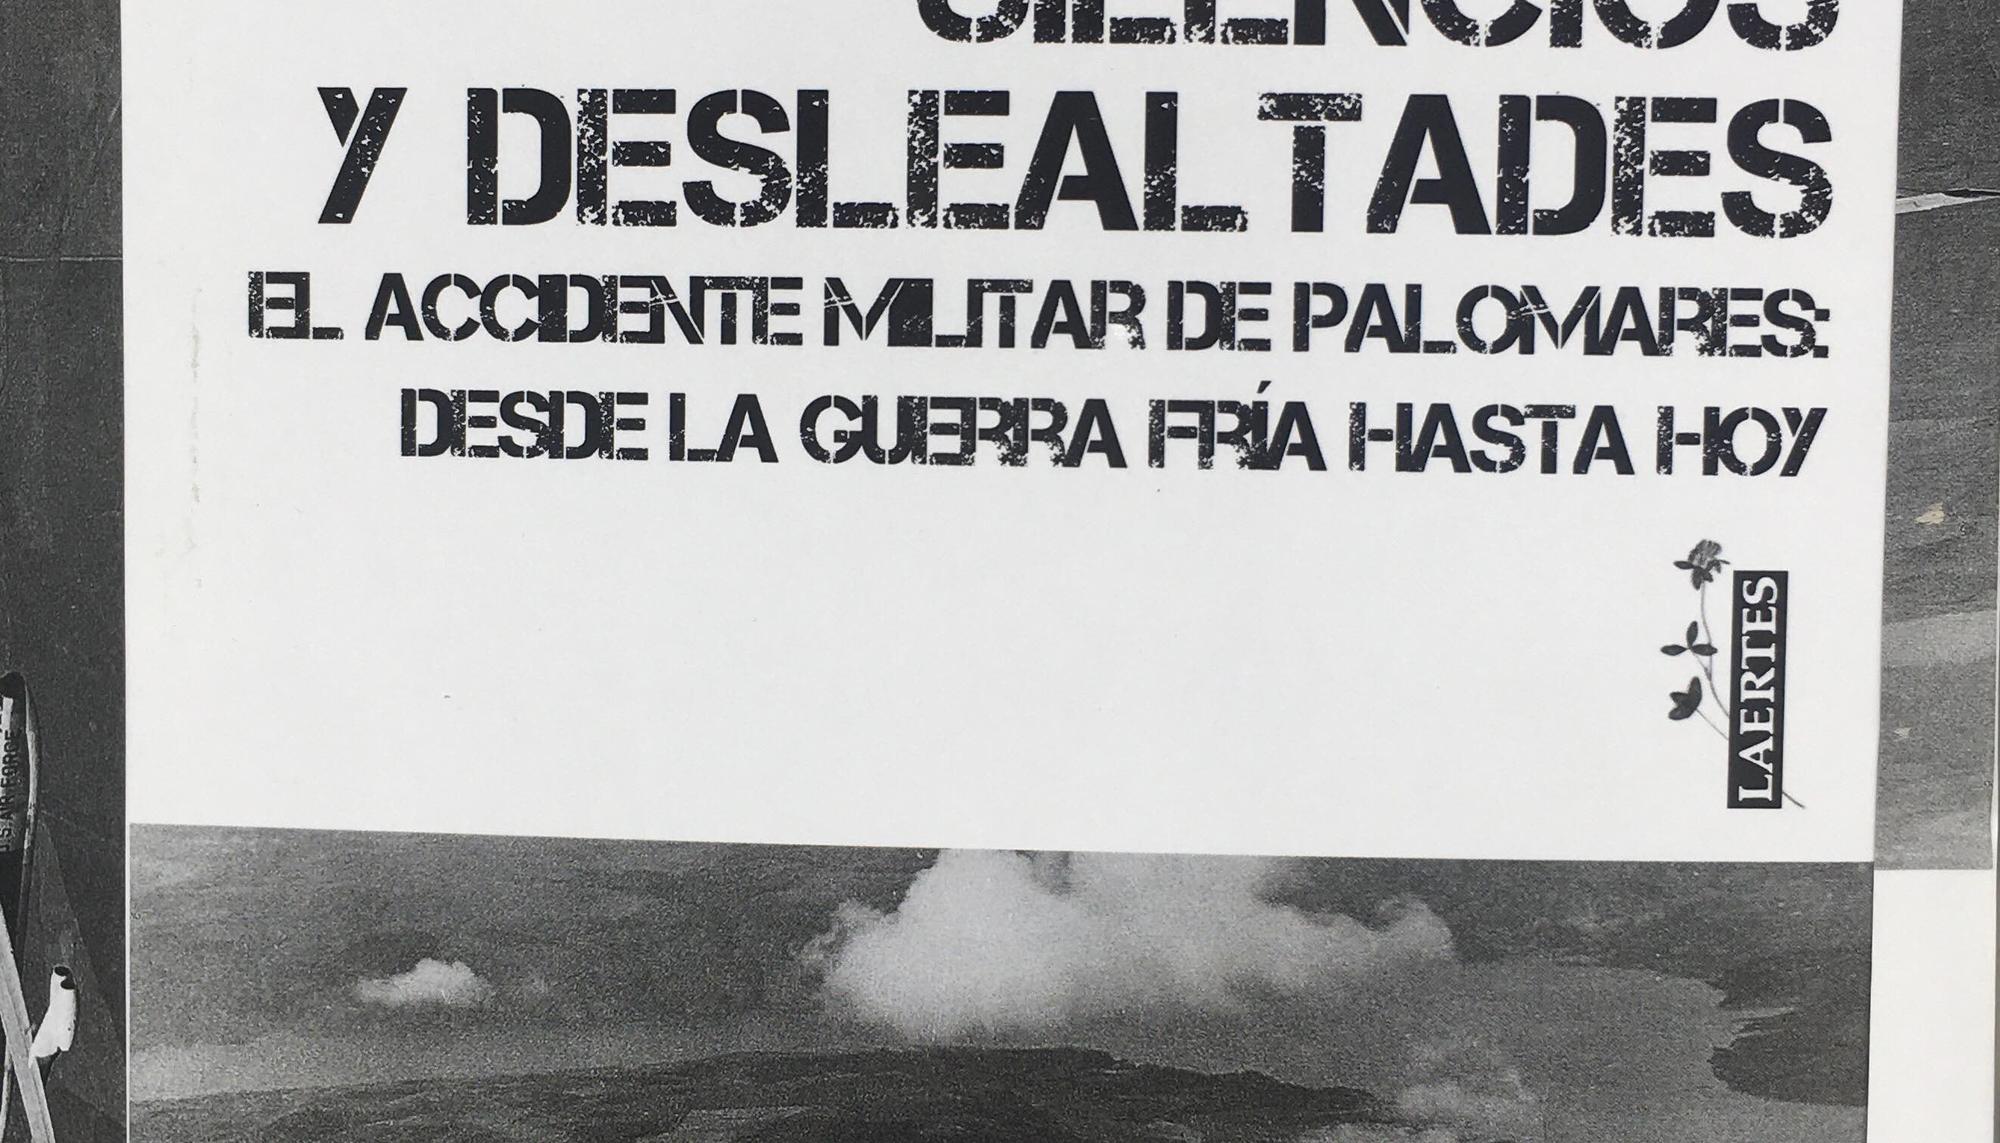 Libro "Silencios y deslealtades", sobre el incidente de Palomares de 1966.